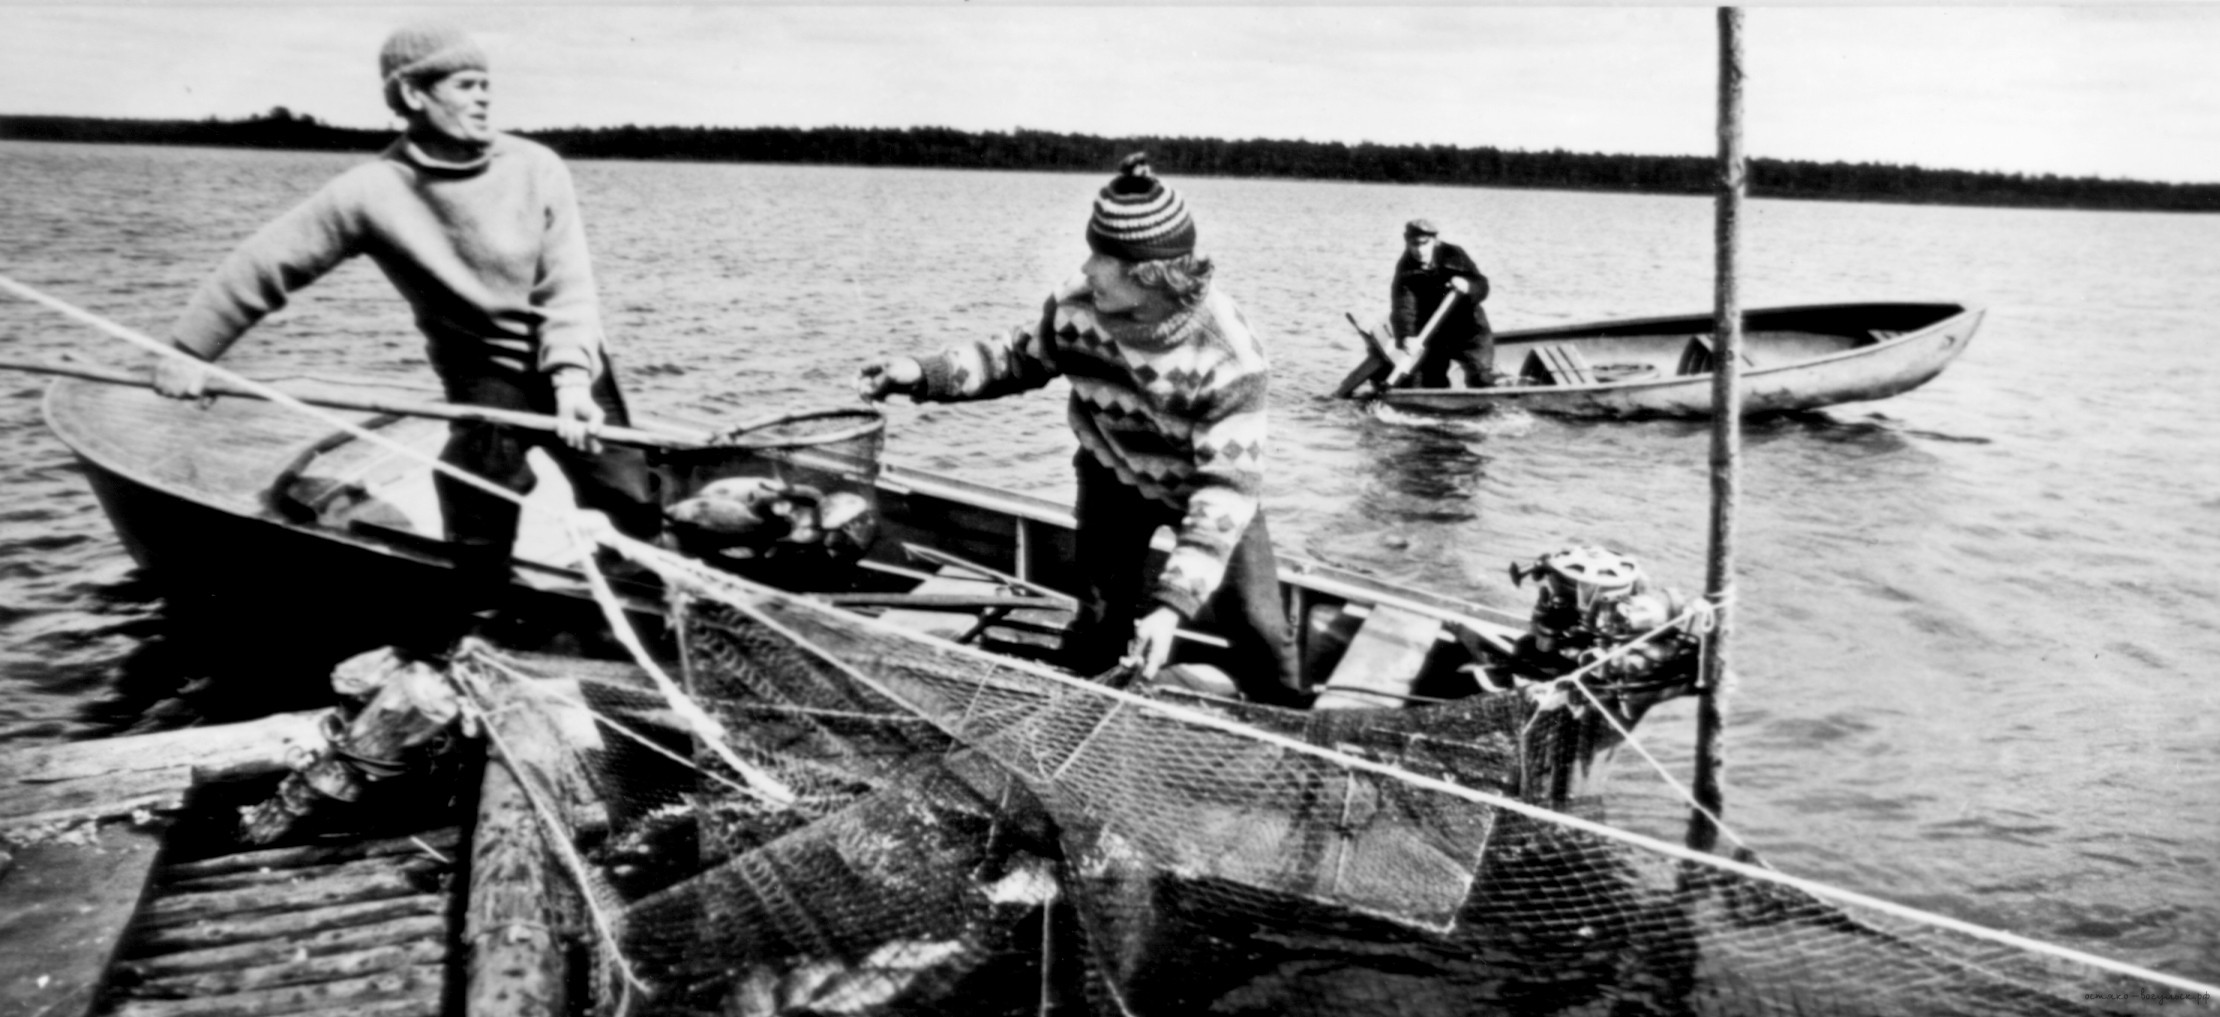 Исторически сложилось так что рыболовство всегда. Кондинская рыбалка. Рыбная ловля 500 лет назад. Кондинский район 20ый век.